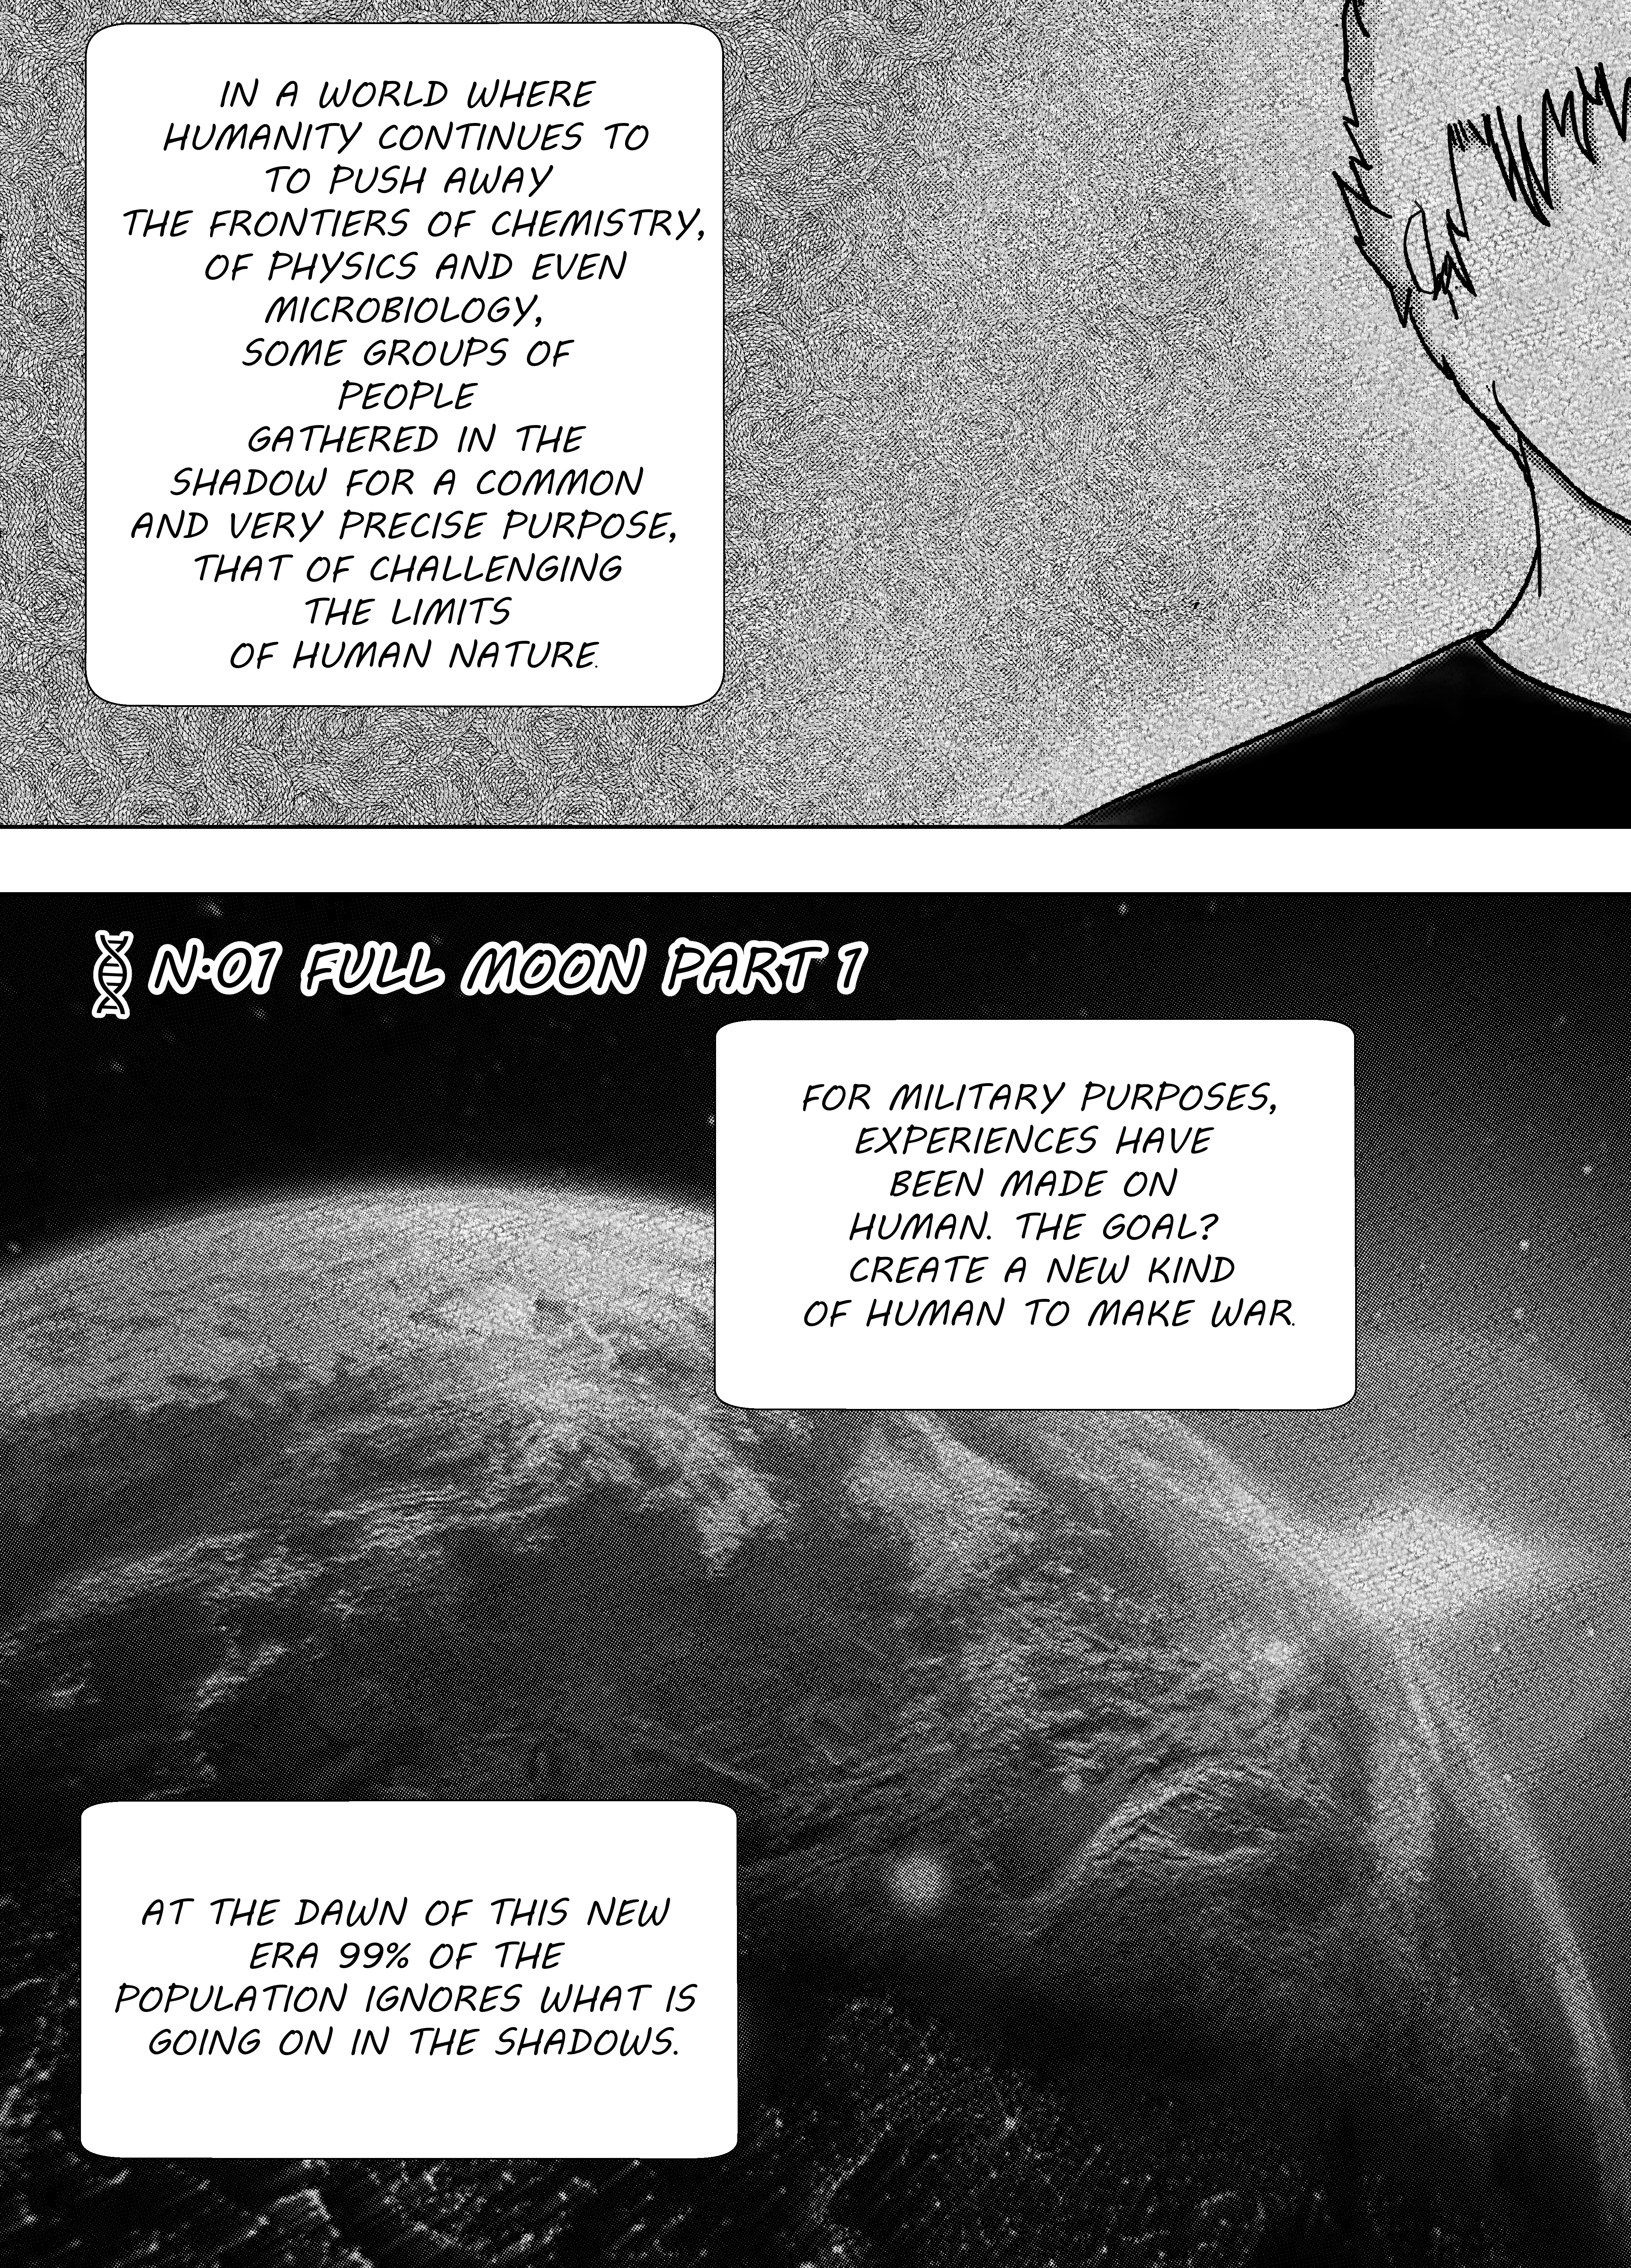 Shingetsu No Monogatari - Page 3